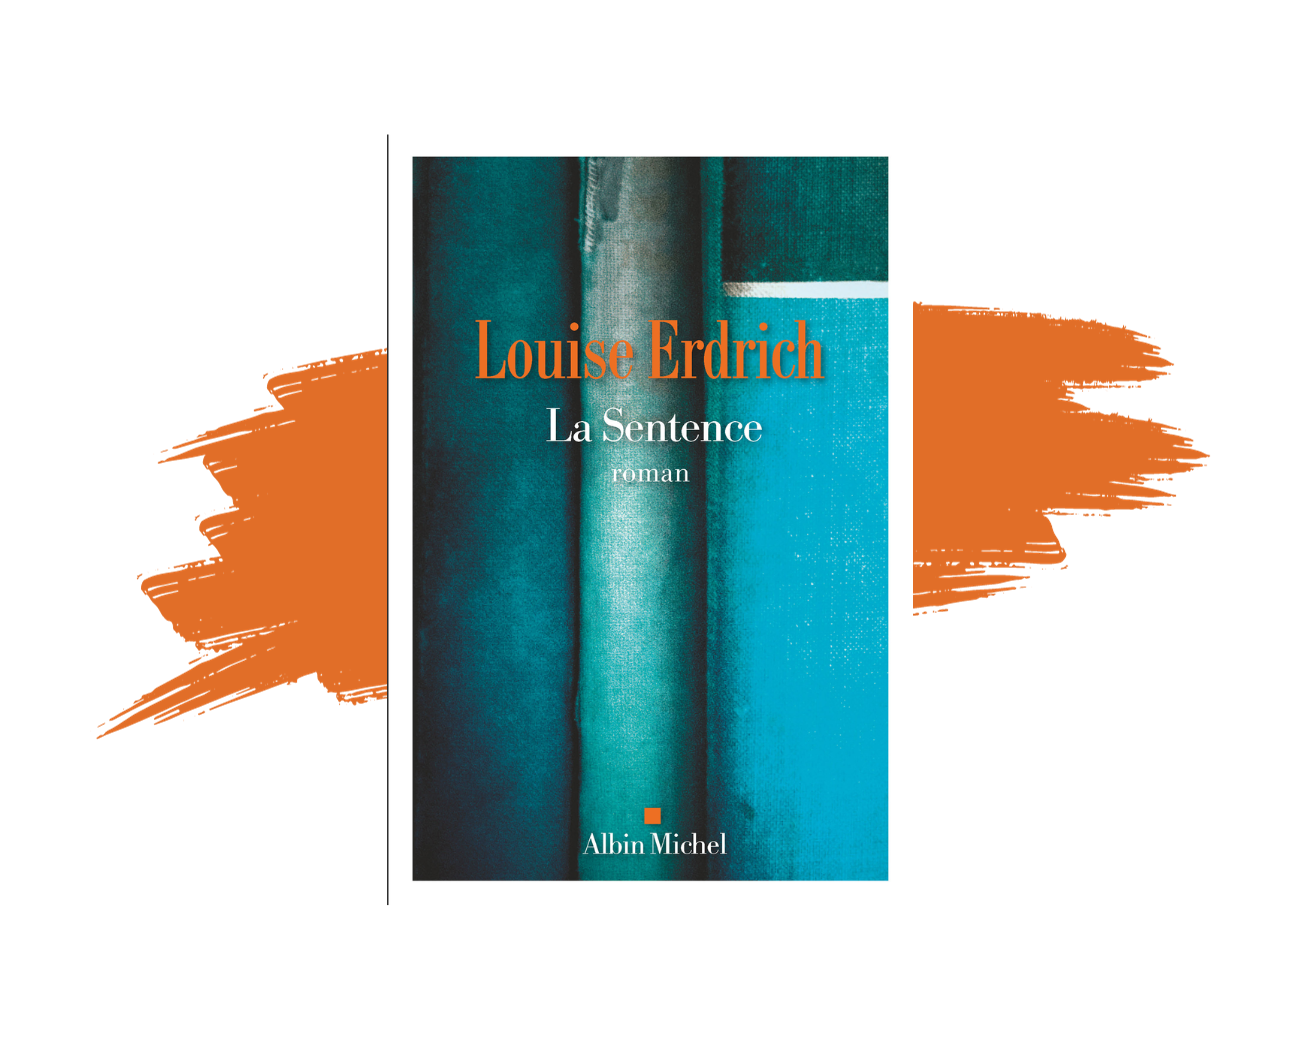 Le roman "La sentence" de Louise Erdrich